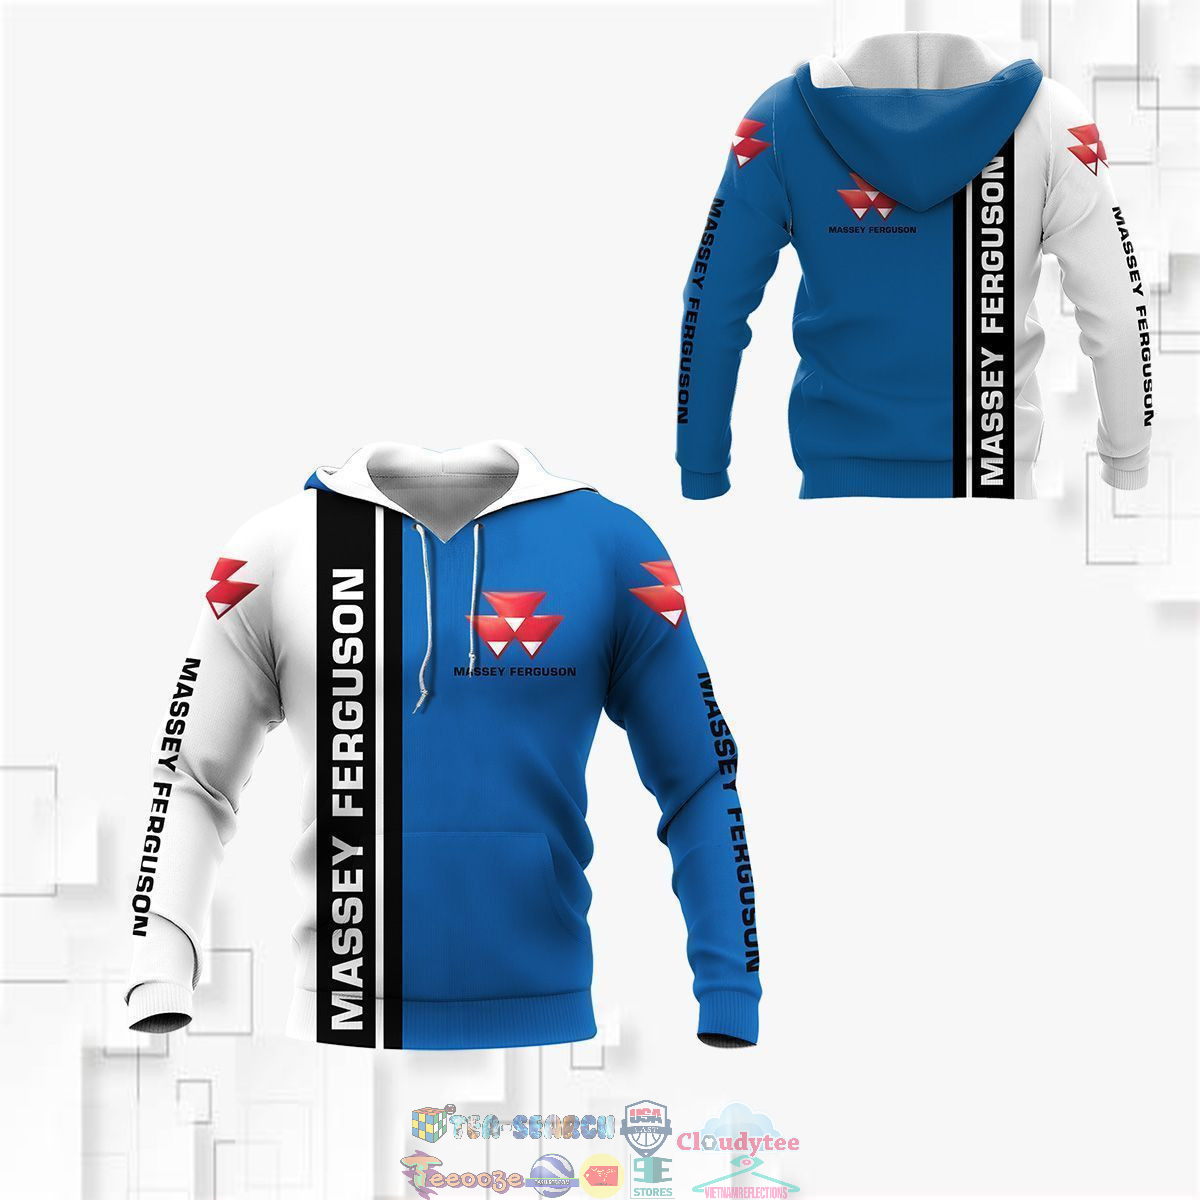 Massey Ferguson ver 5 3D hoodie and t-shirt